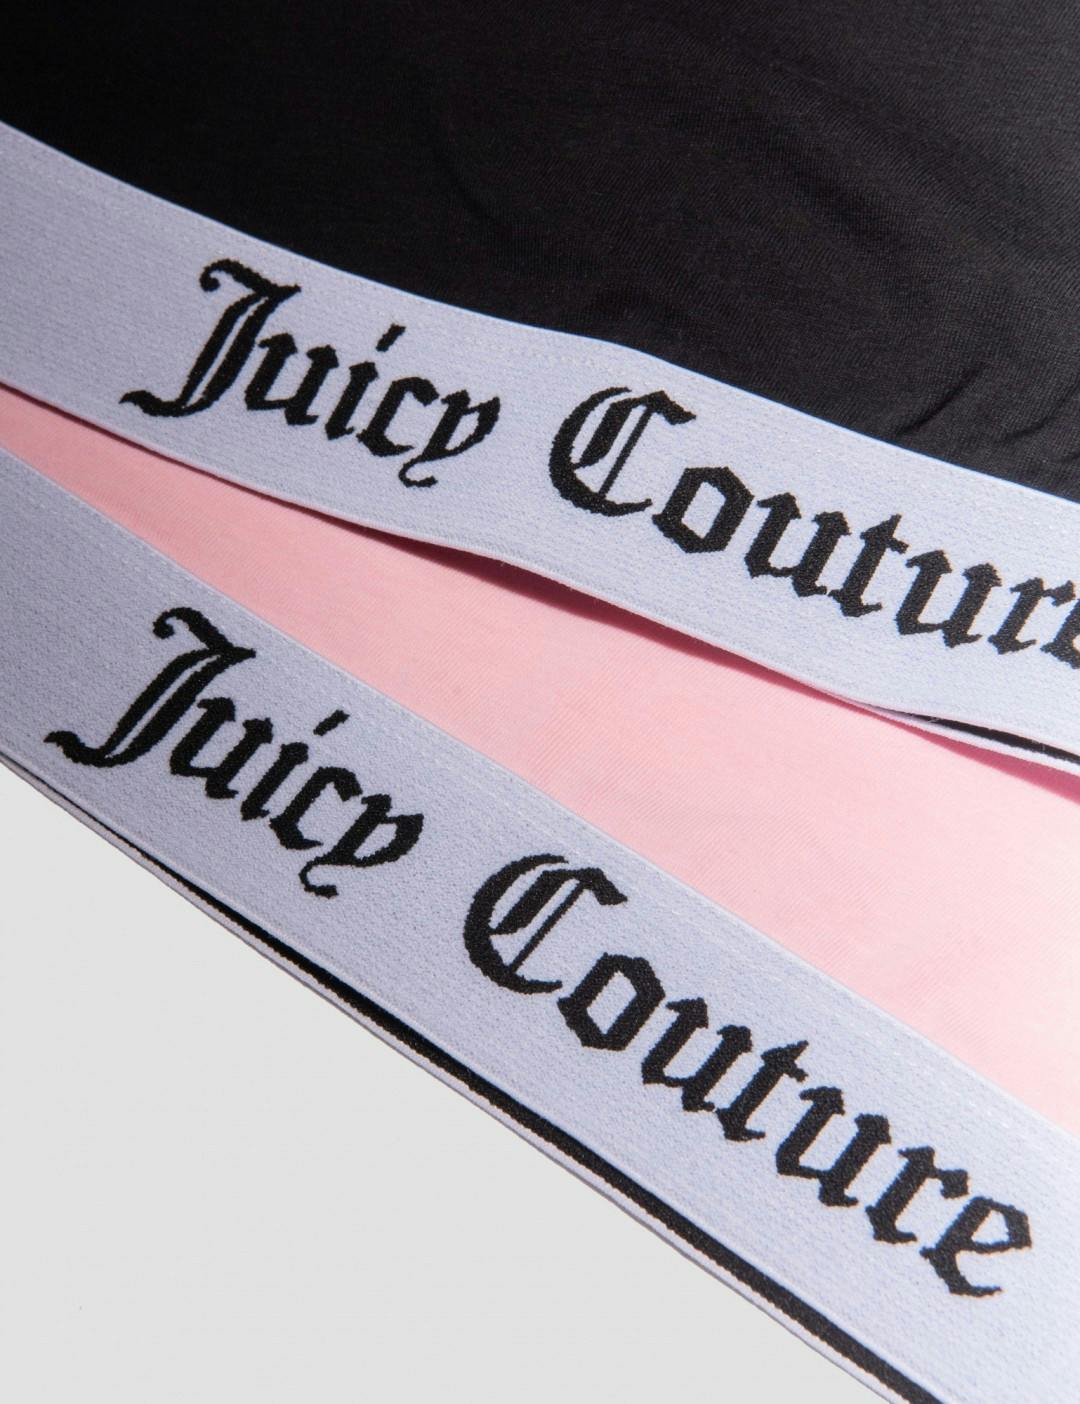 Juicy Couture Crop Top 2PK Hanging